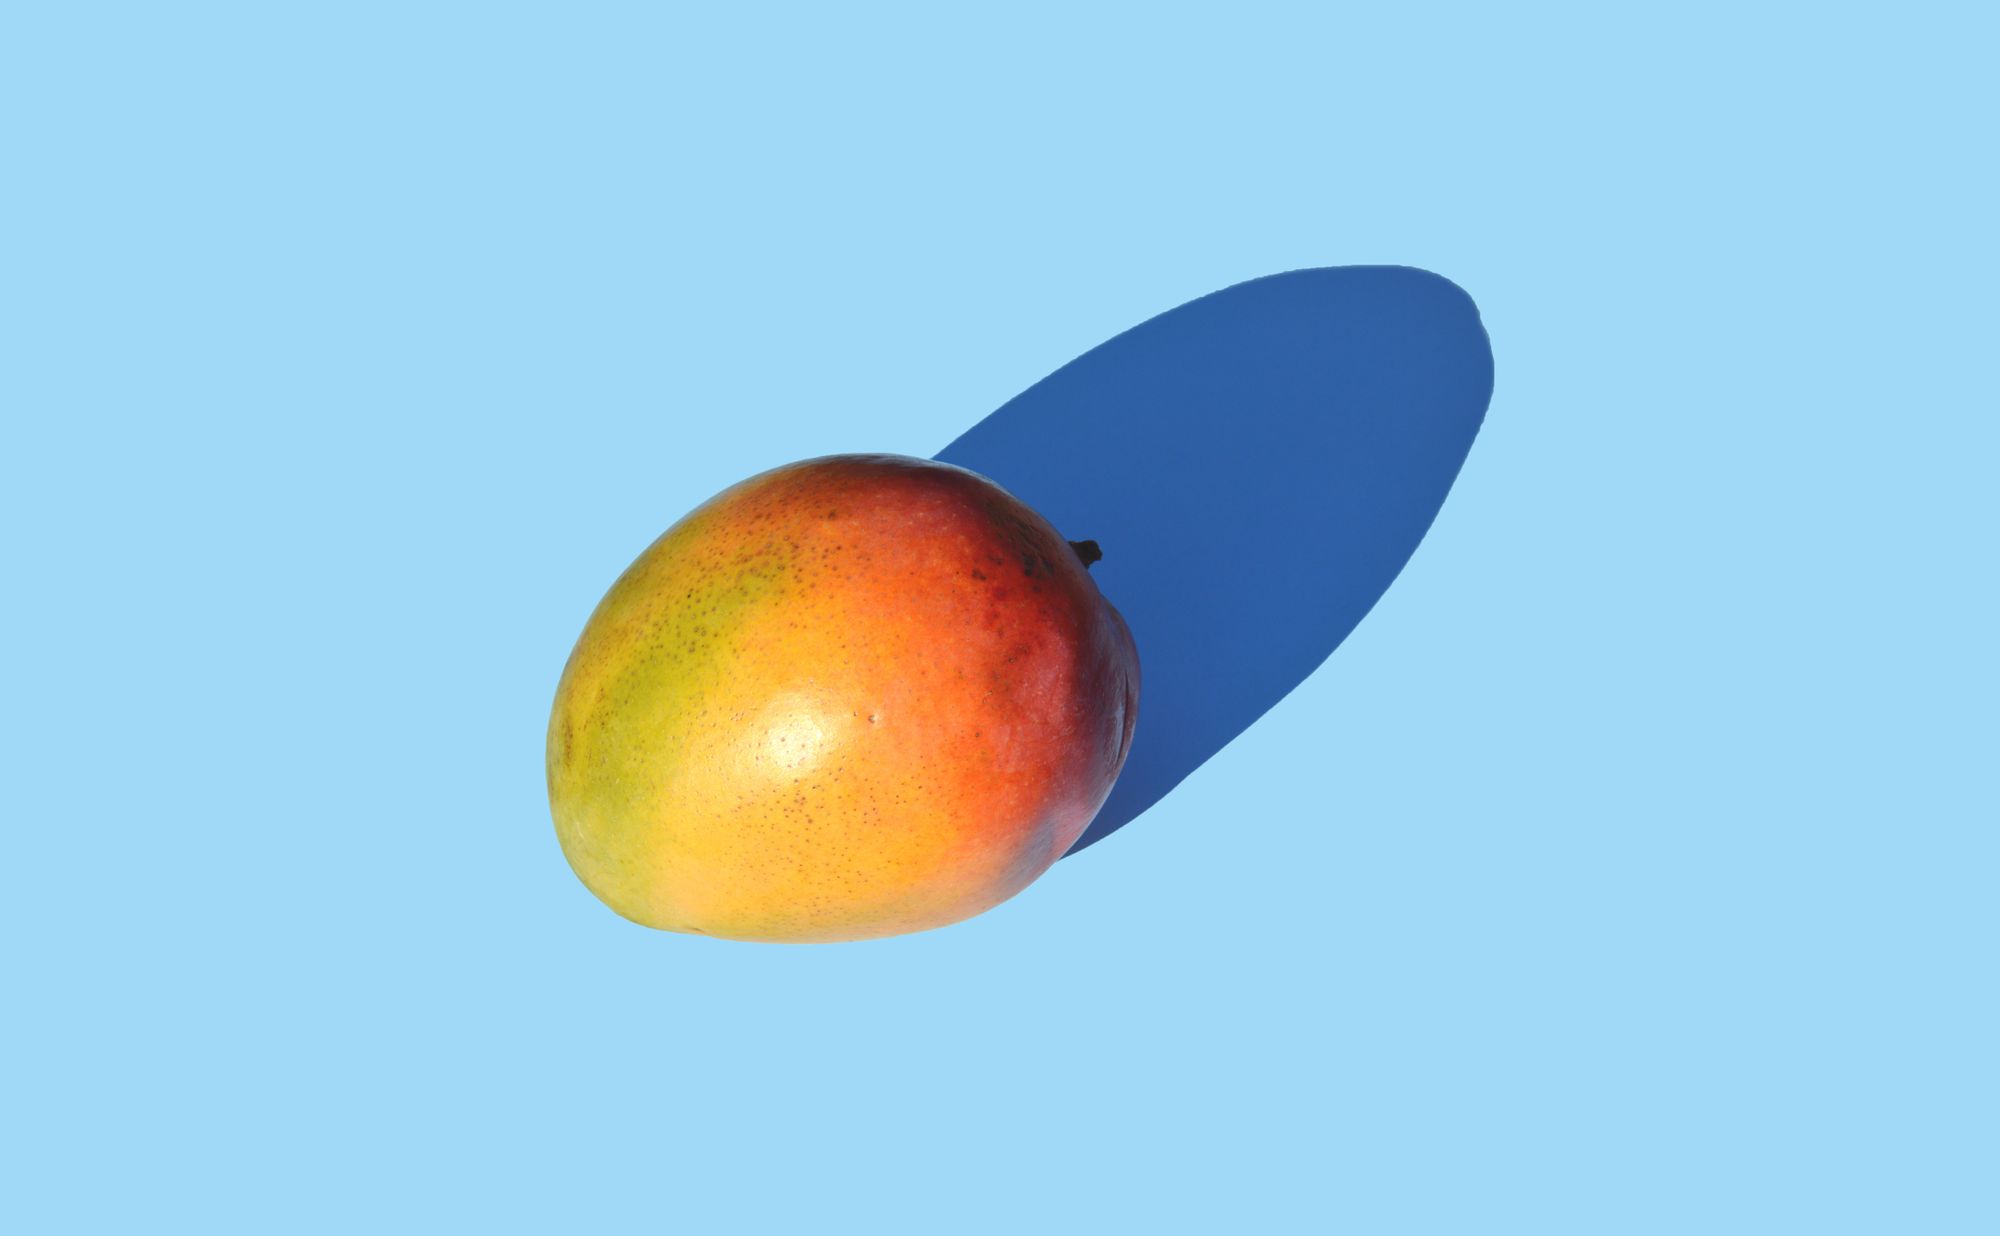 Get fruity